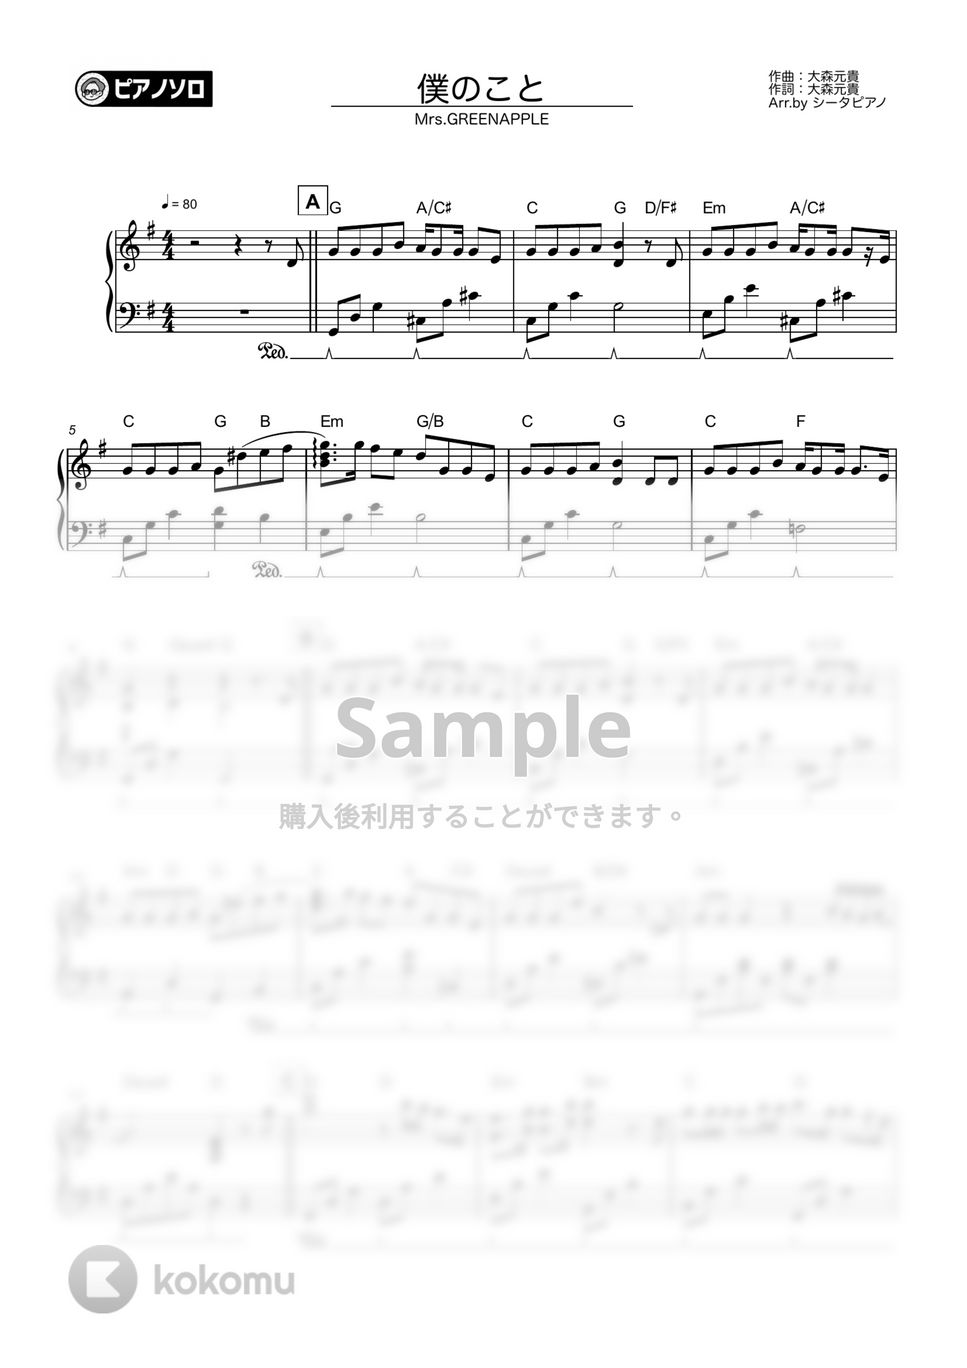 Mrs.GREENAPPLE - 僕のこと by シータピアノ